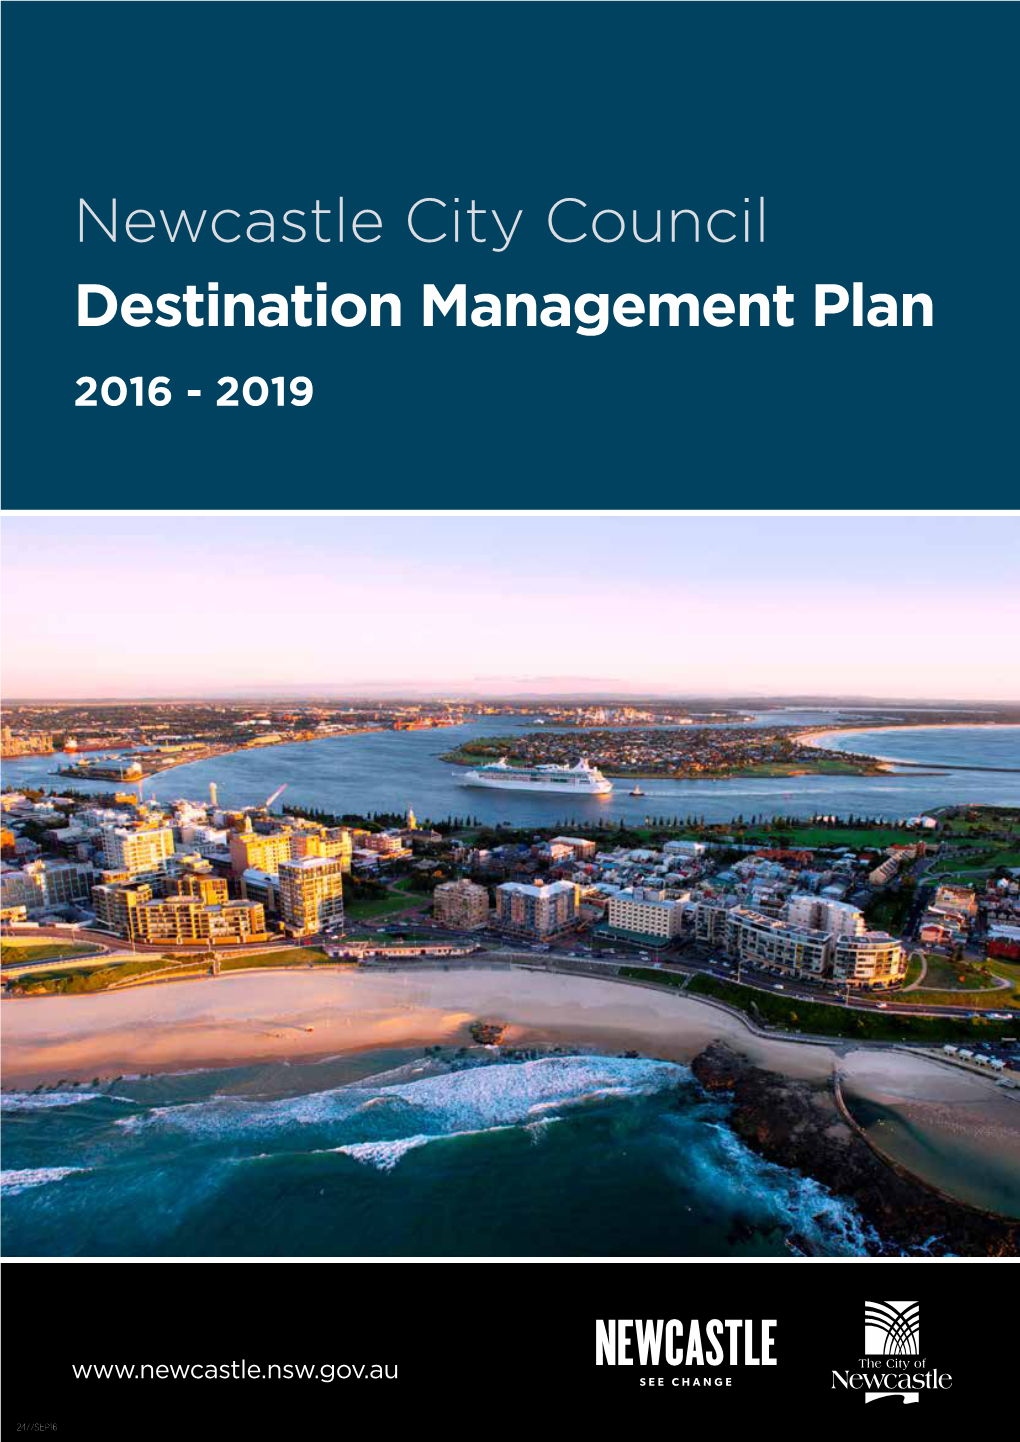 Newcastle City Council Destination Management Plan 2016 - 2019